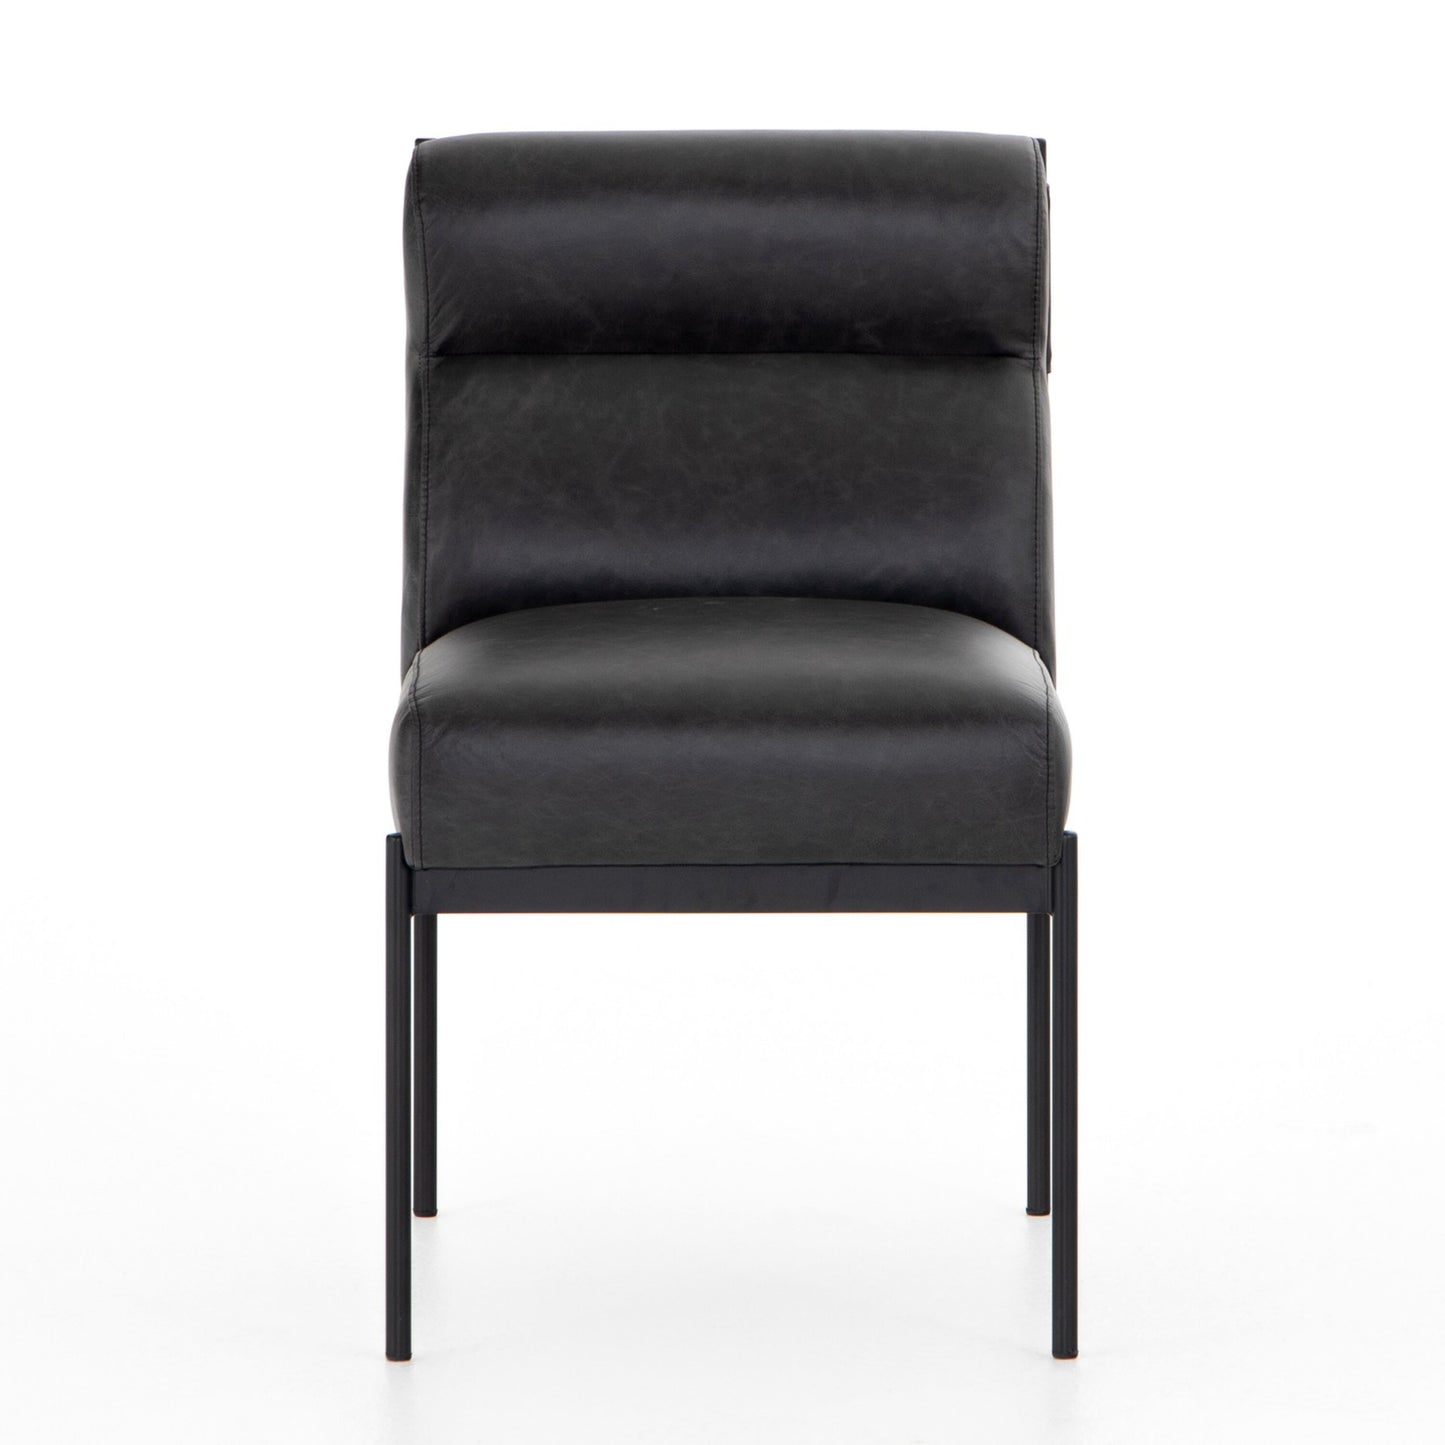 Klein dining chair-sonoma black